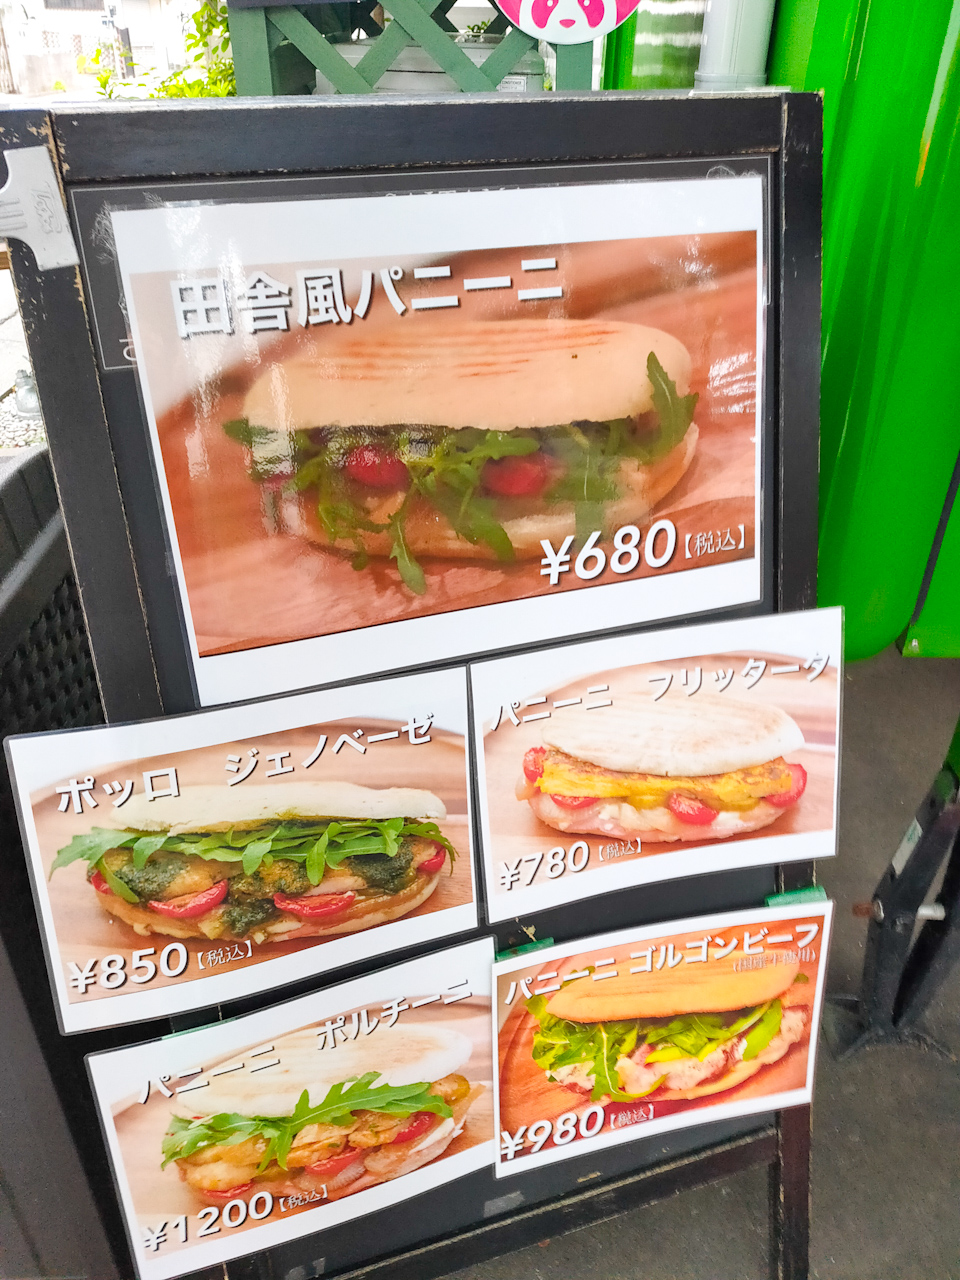 メインメニューは埼玉県産小麦と地元野菜などを使ったパニーニ